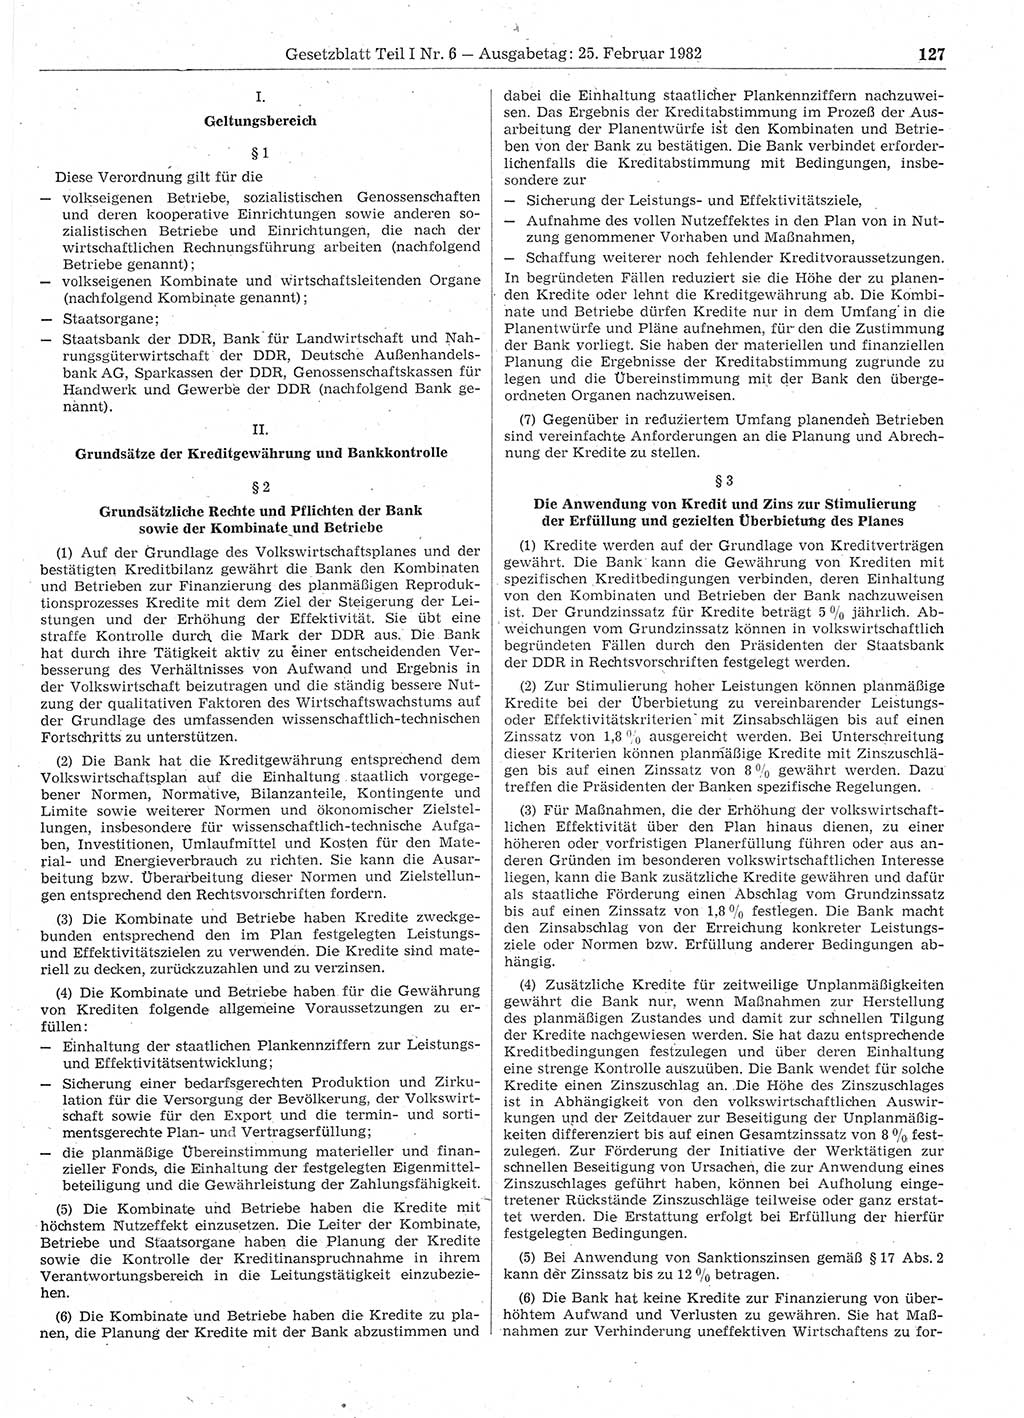 Gesetzblatt (GBl.) der Deutschen Demokratischen Republik (DDR) Teil Ⅰ 1982, Seite 127 (GBl. DDR Ⅰ 1982, S. 127)